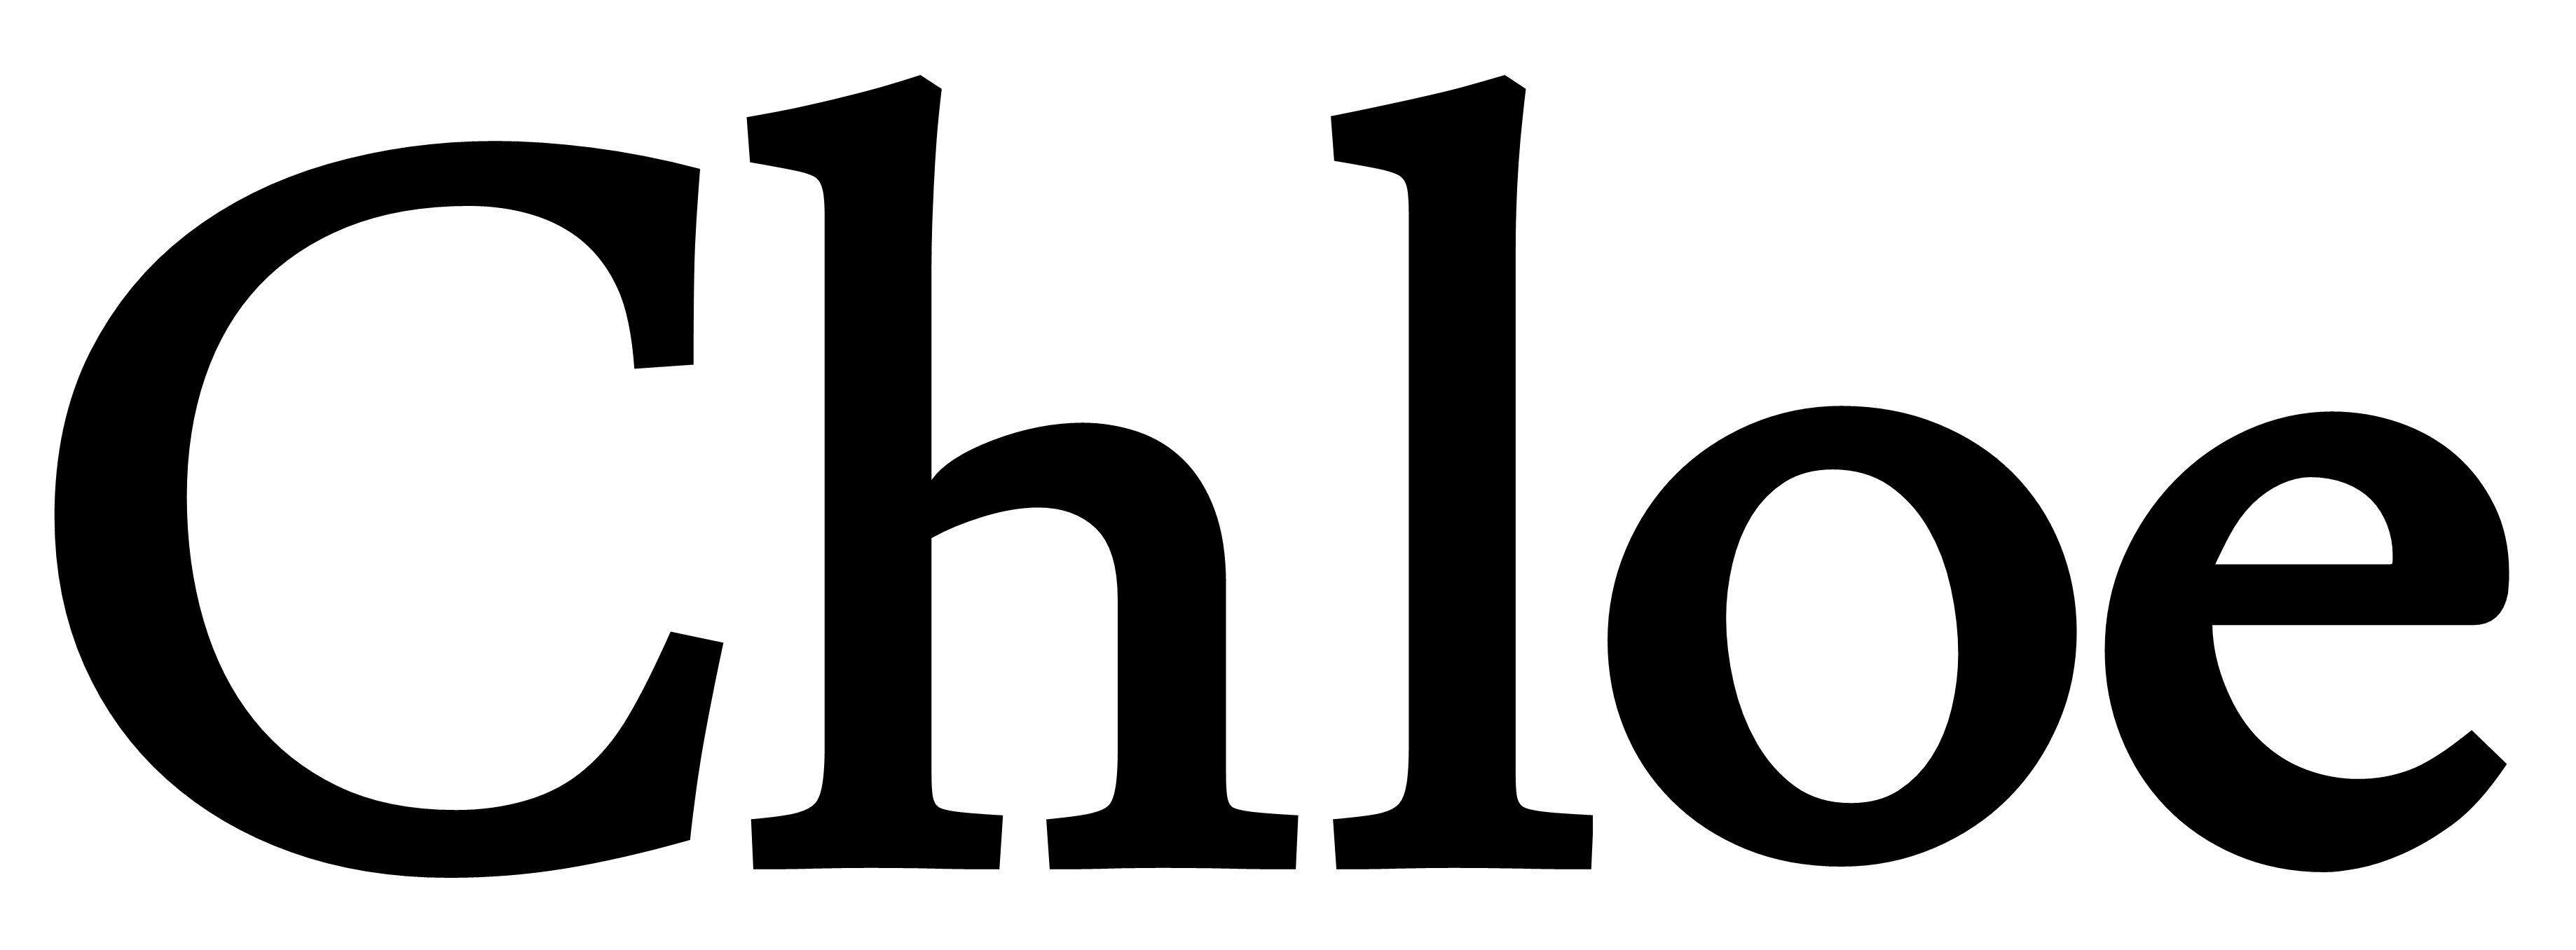 Chloe Brand Logo - Chloe Logos